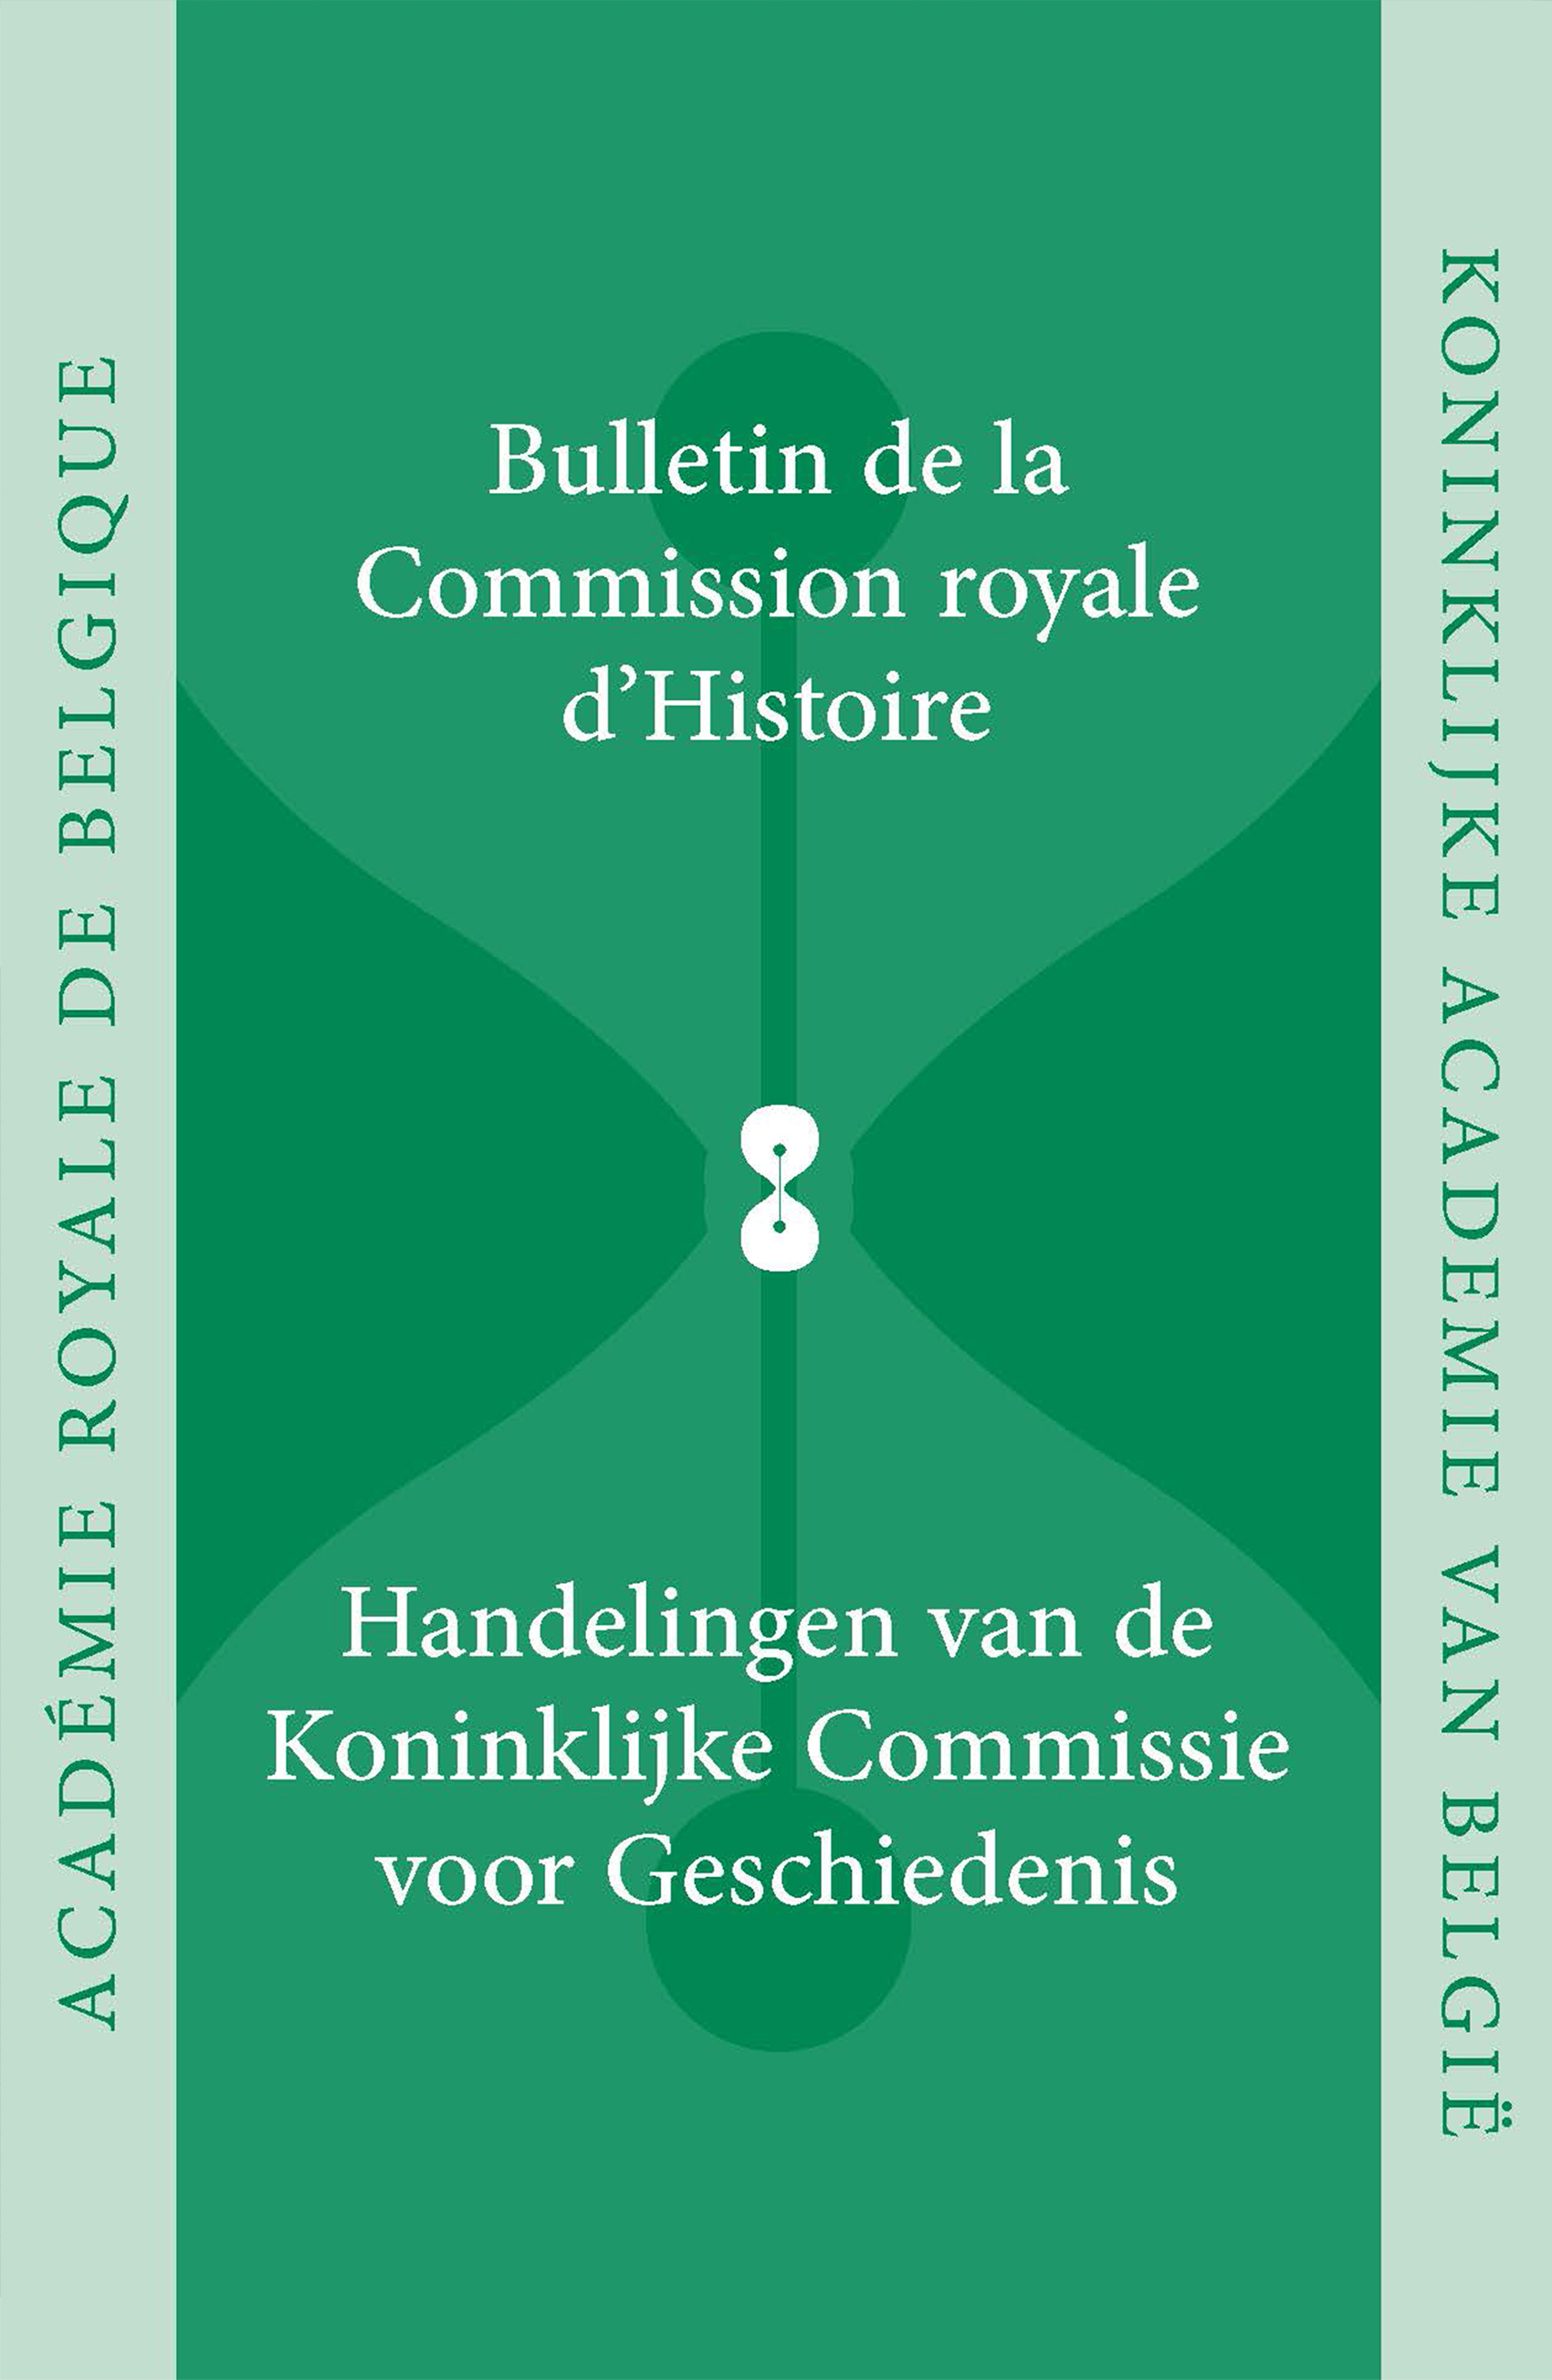 HANDELINGEN VAN DE KONINKLIJKE COMMISSIE VOOR GESCHIEDENIS/BULLETINS, VOL. 188, 2022 (kcg)